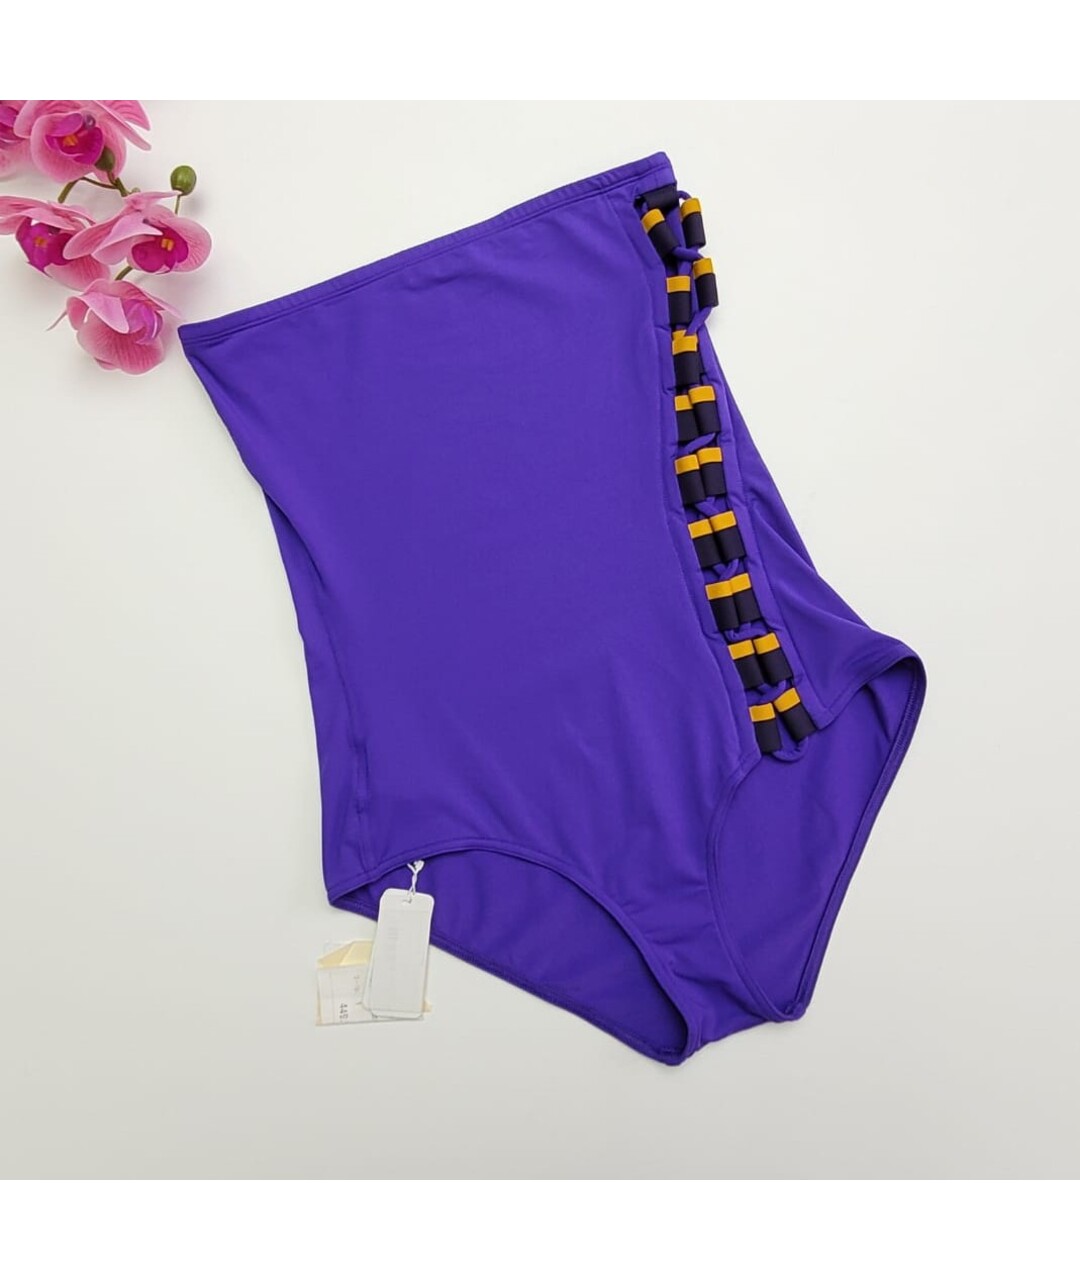 ERES Фиолетовый полиэстеровый купальник, фото 2